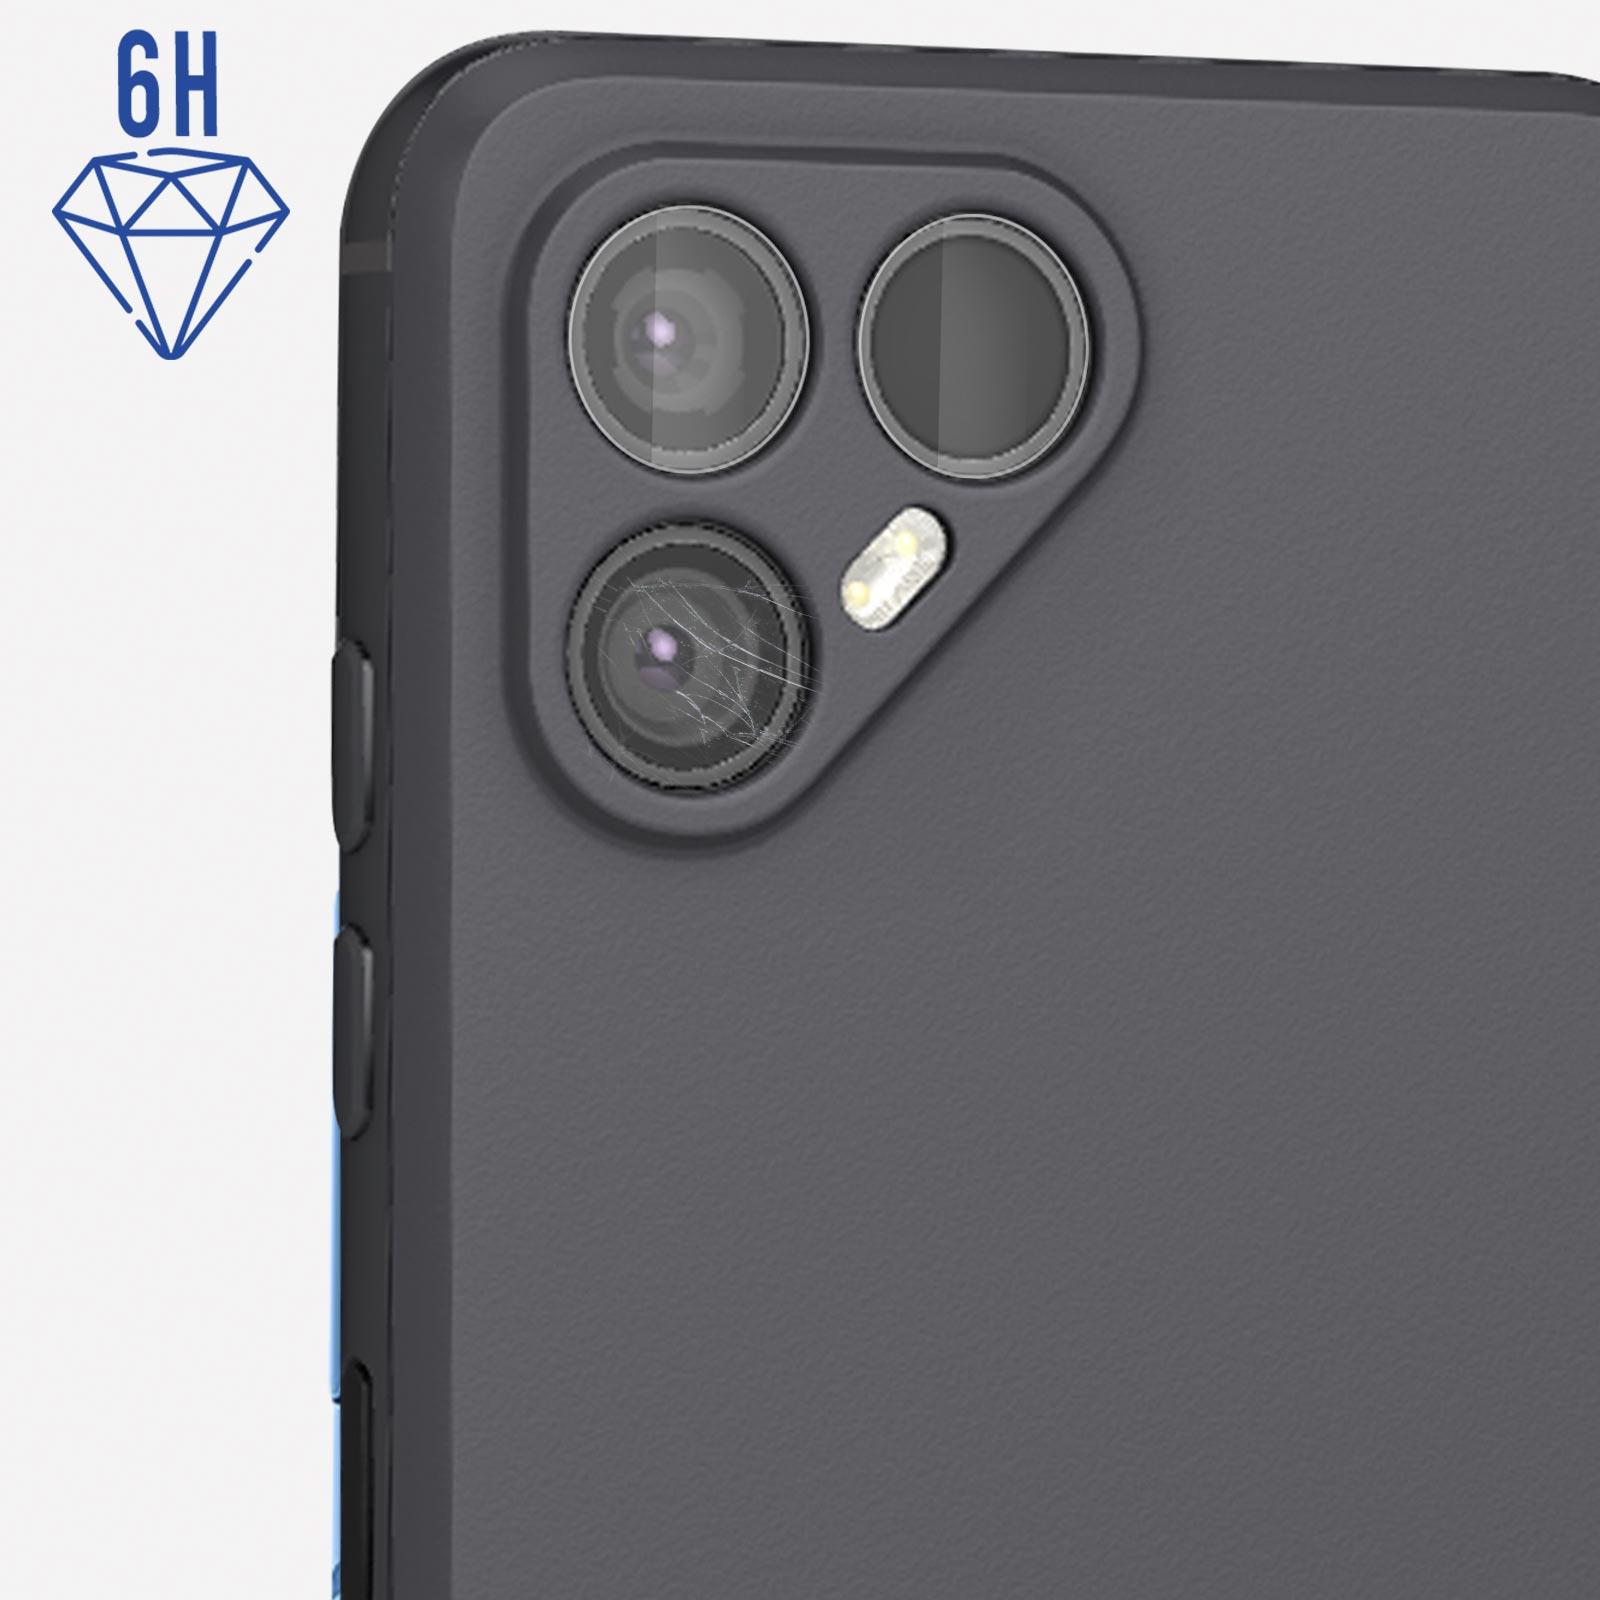 3MK Fairphone Lens Protection 4) Fairphone - 4 3mk Glas(für Fairphone